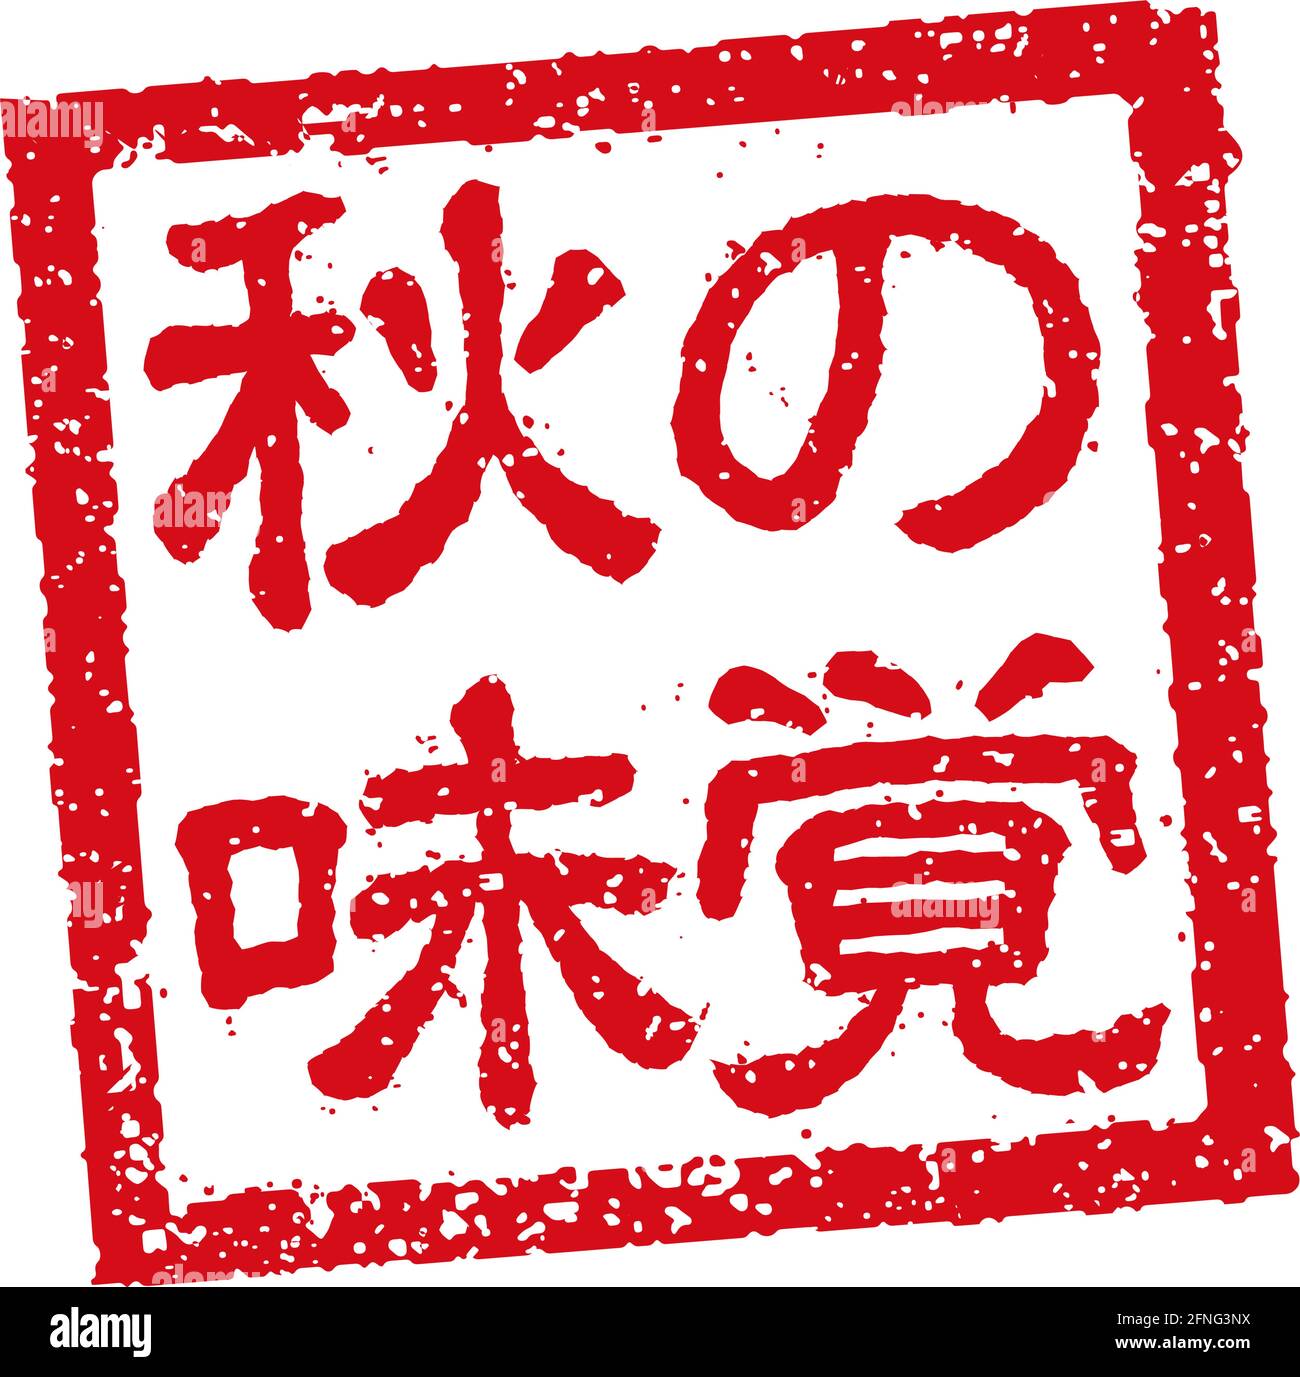 Abbildung mit Gummistempeln, die oft in japanischen Restaurants und Pubs verwendet wird Herbstfutter Stock Vektor